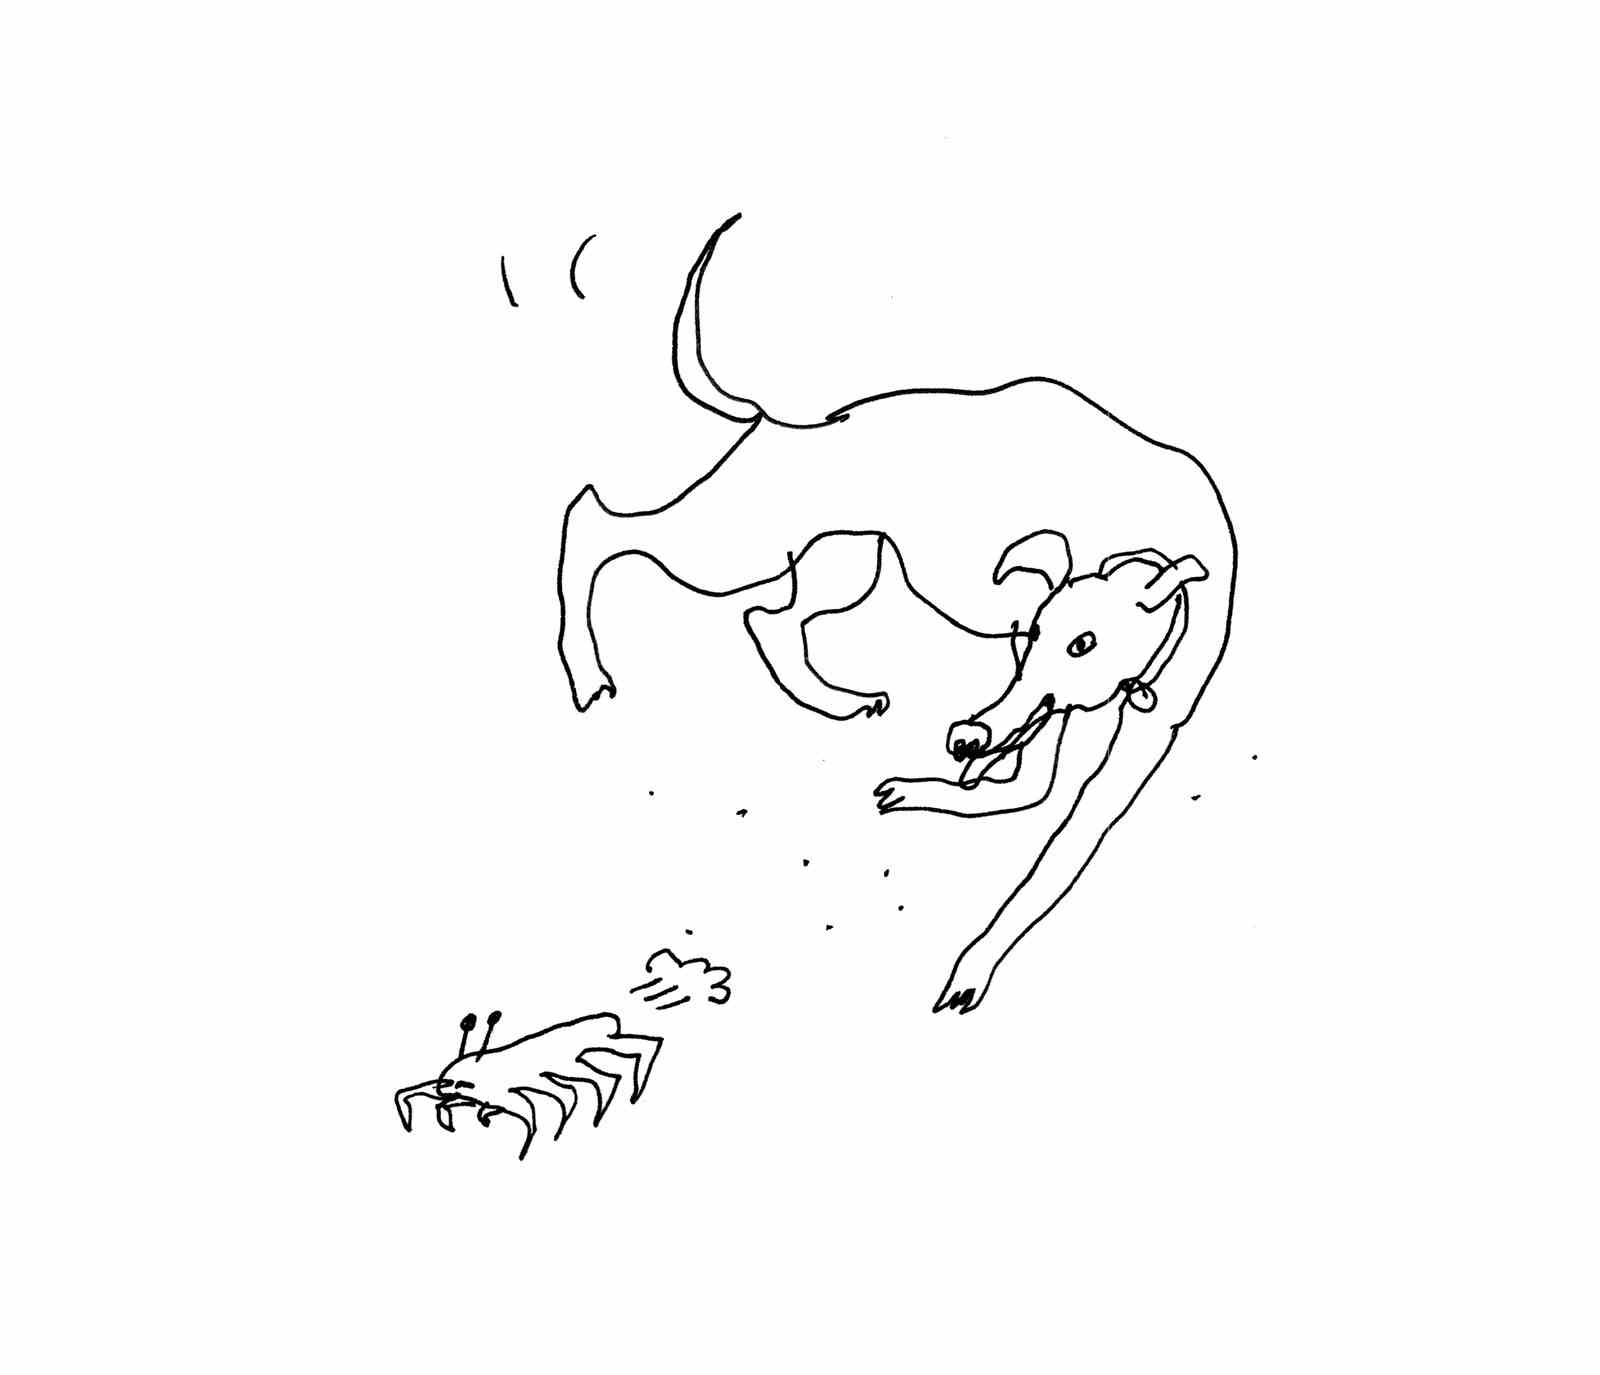 Ein Hund jagt eine Krabbe.